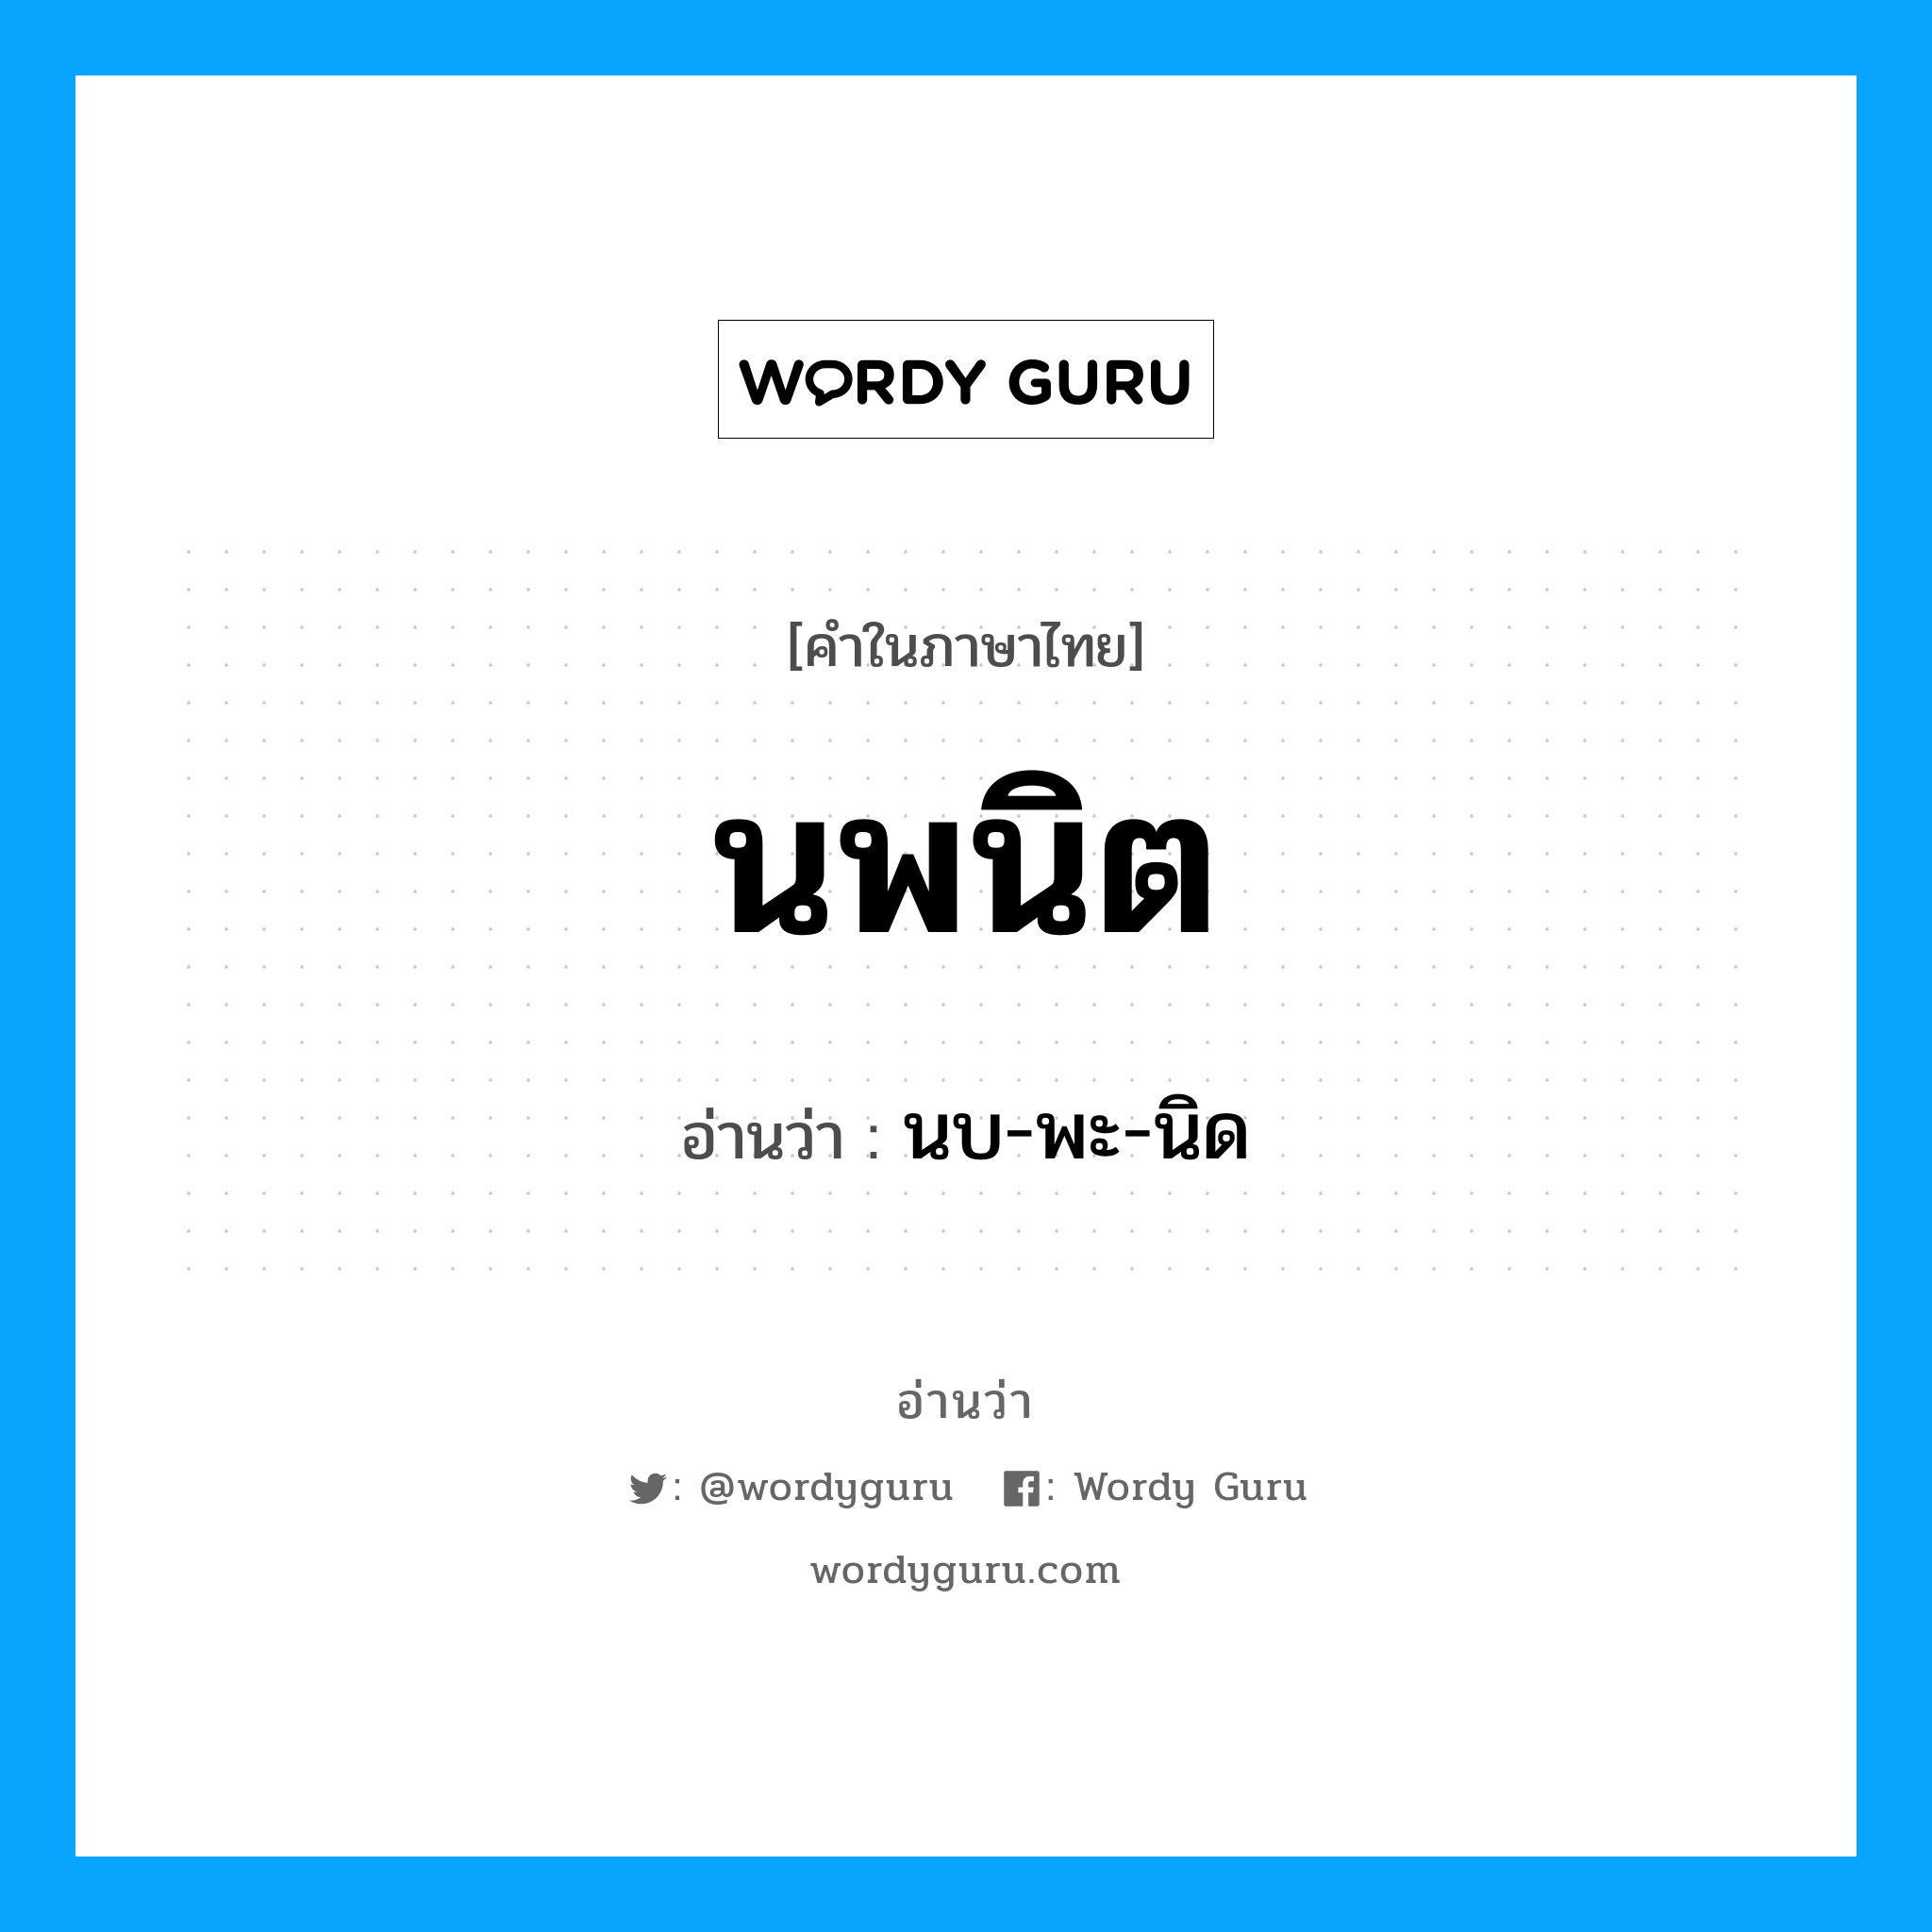 นบ-พะ-นิด เป็นคำอ่านของคำไหน?, คำในภาษาไทย นบ-พะ-นิด อ่านว่า นพนิต